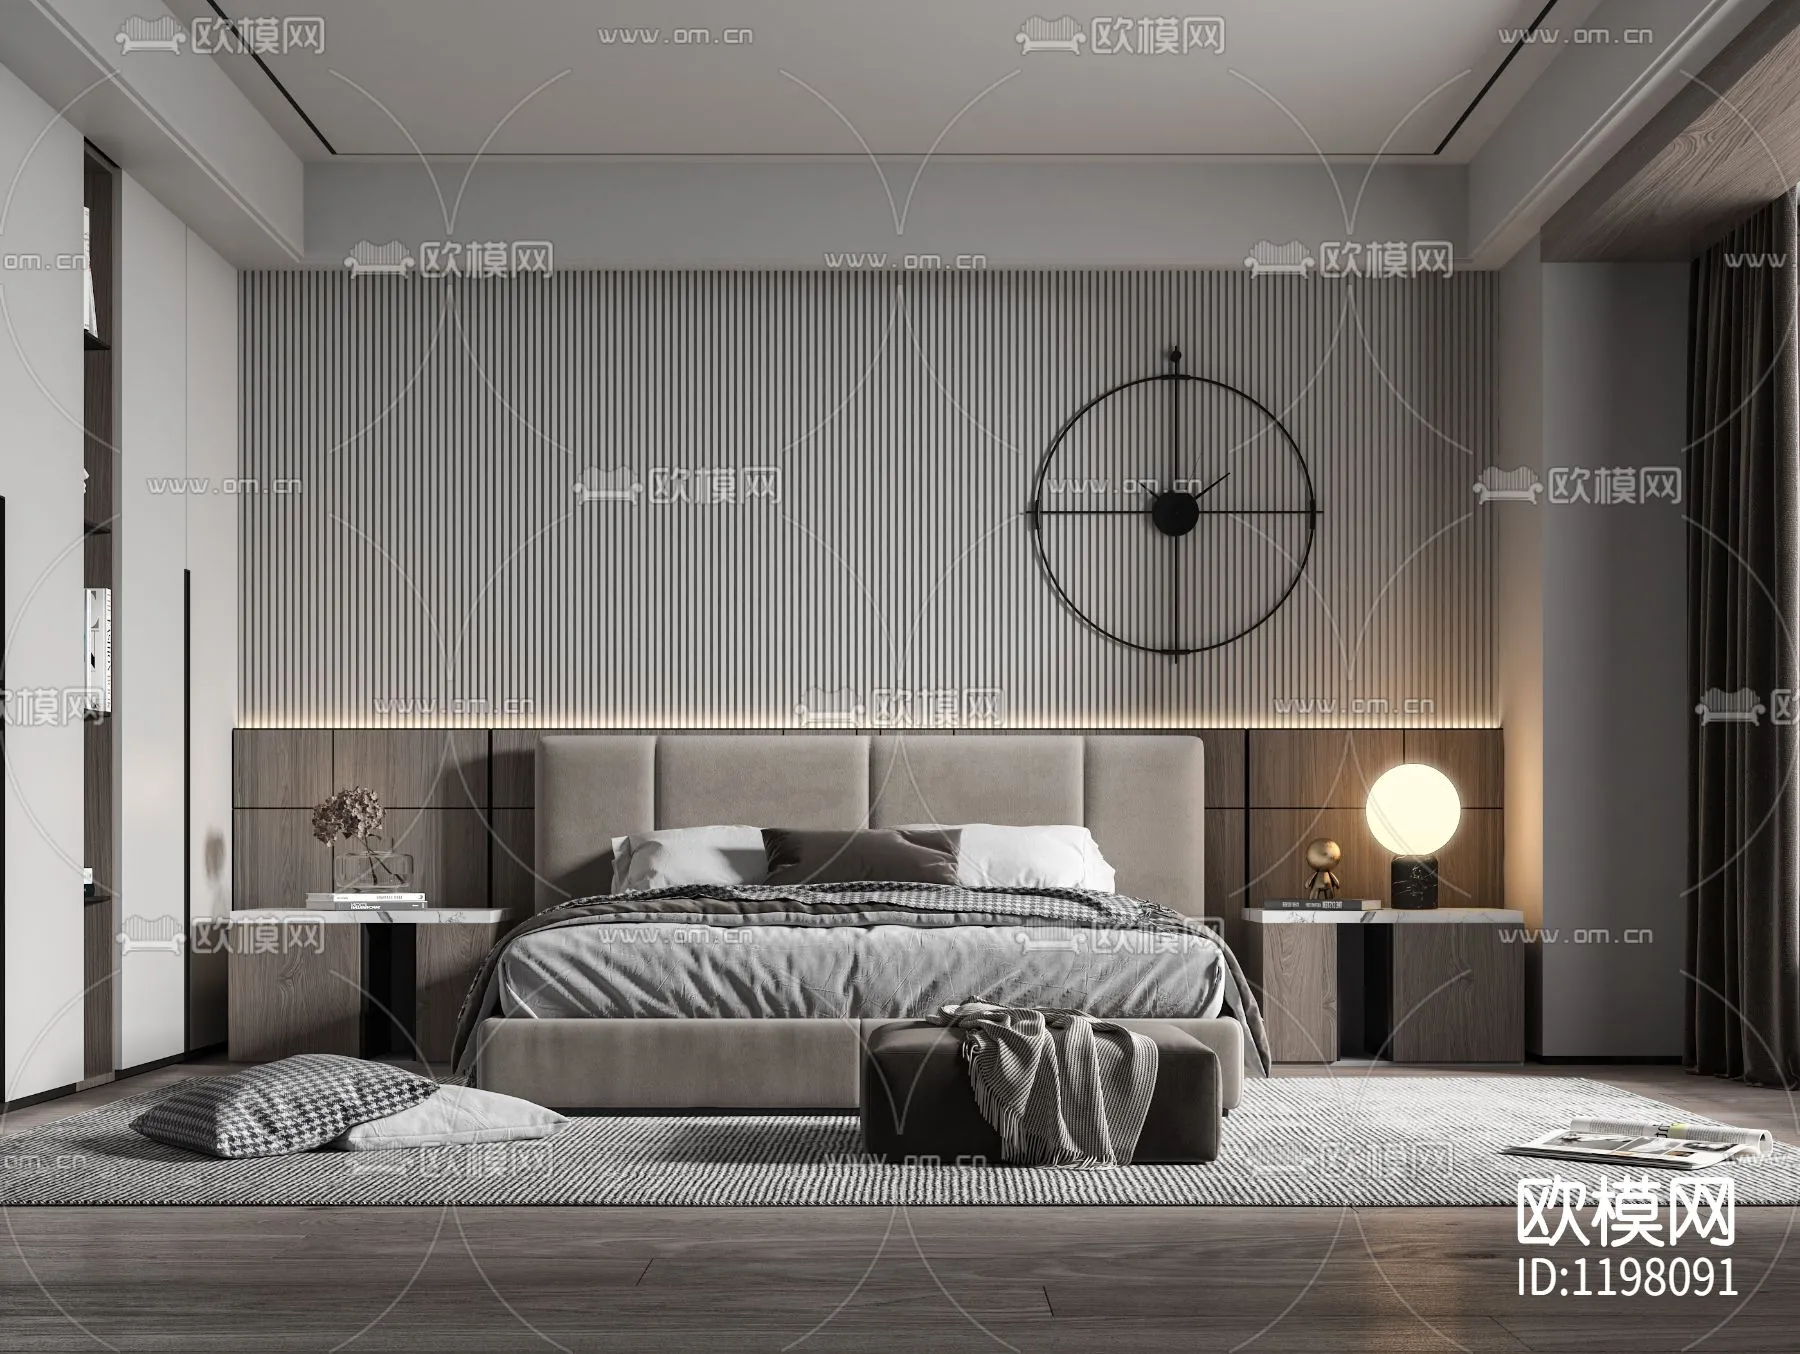 Bedroom 3D Scenes – 0199